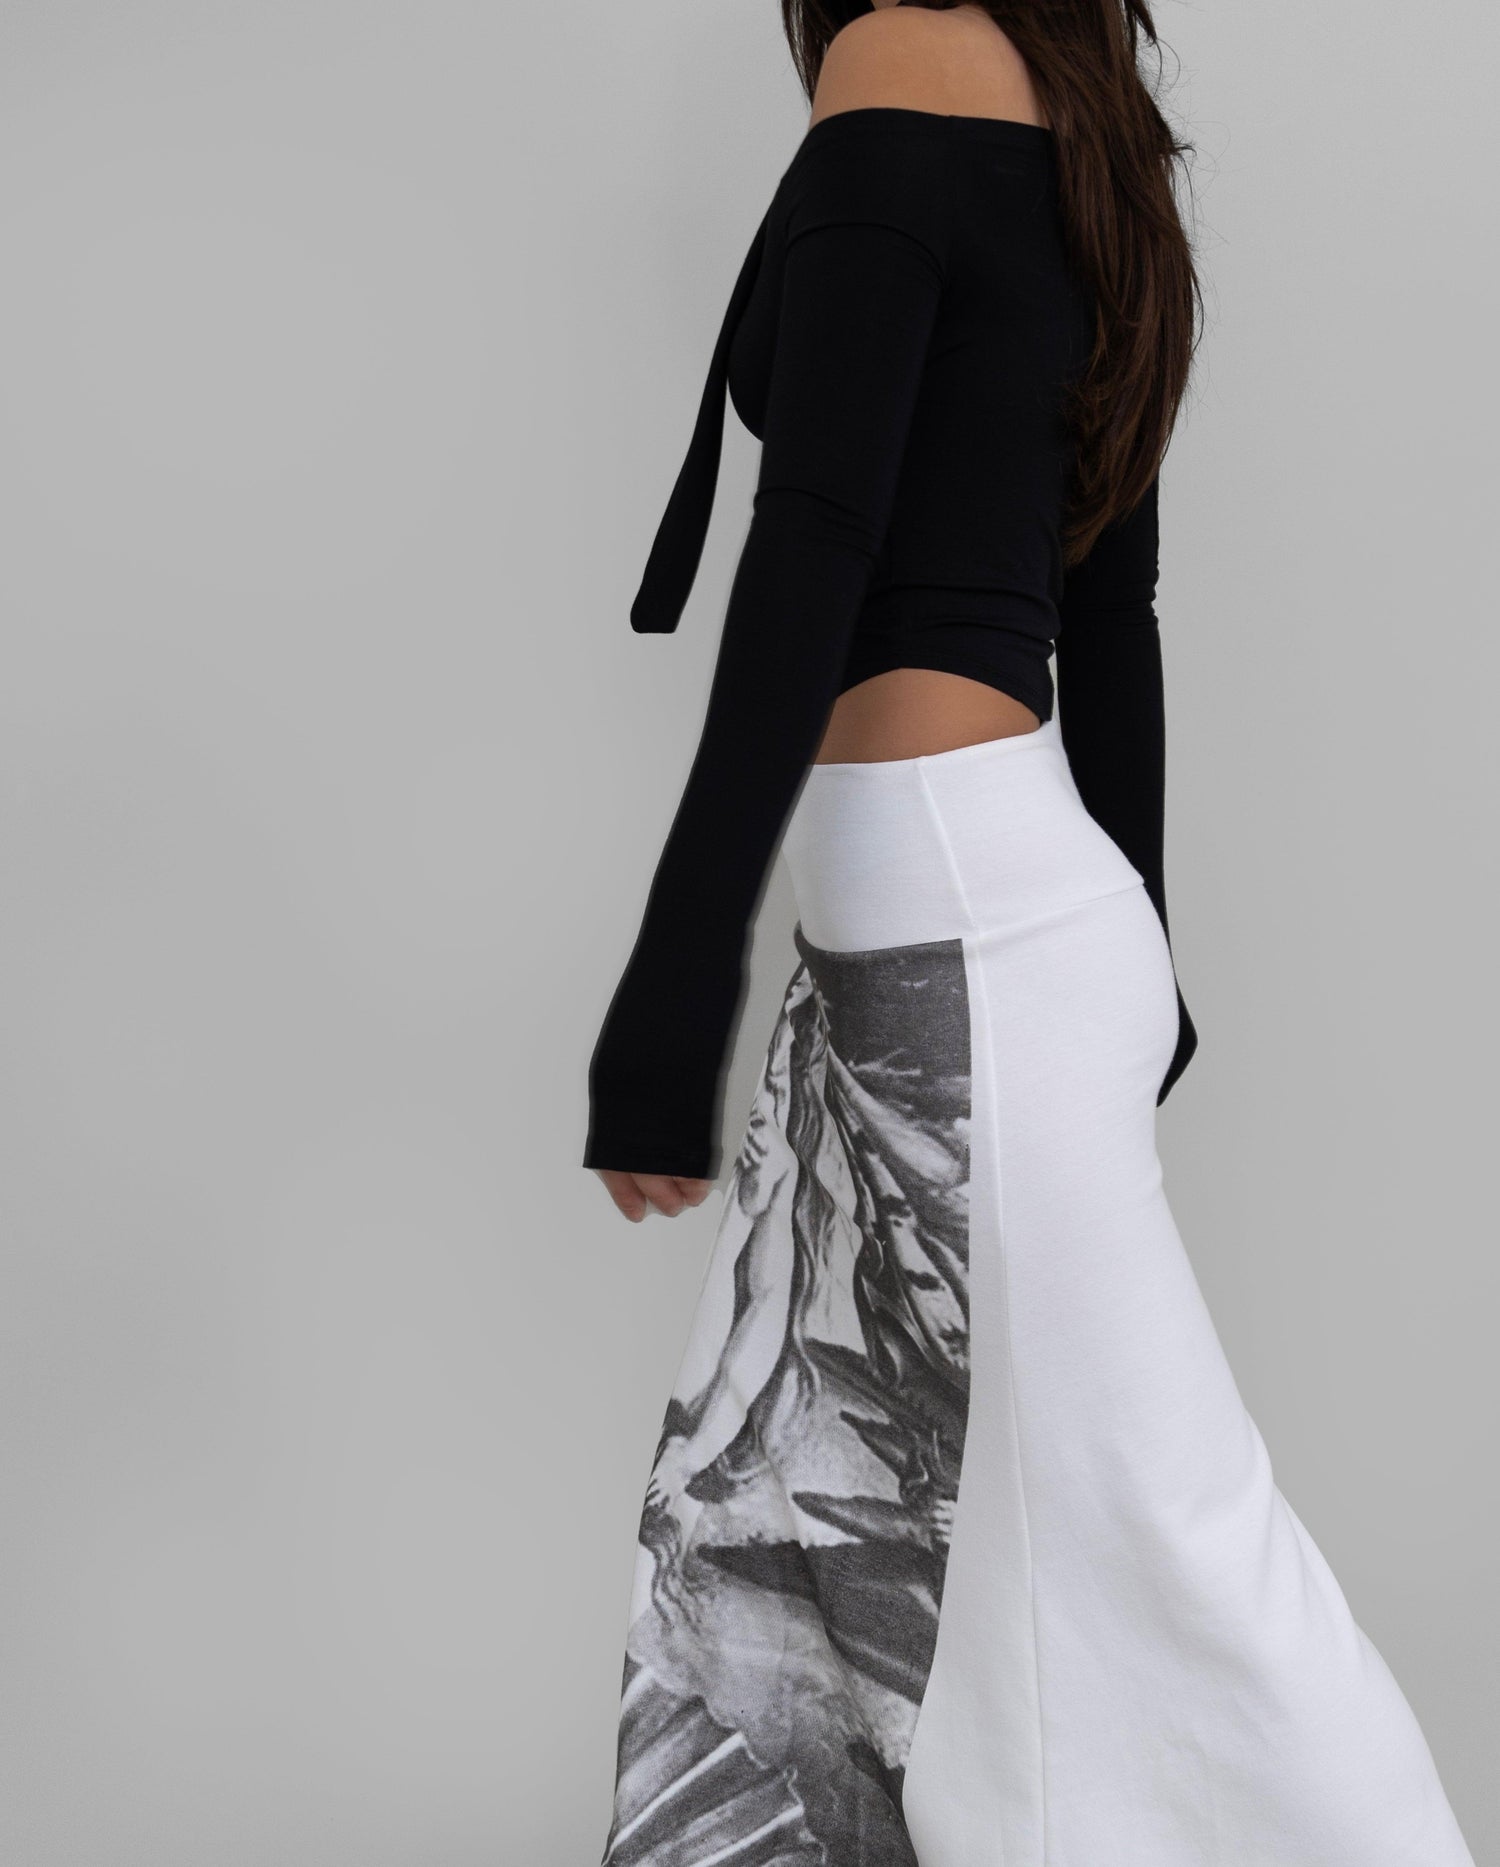 Reese Venus Graphic Flare Skirt / White - The Bekk